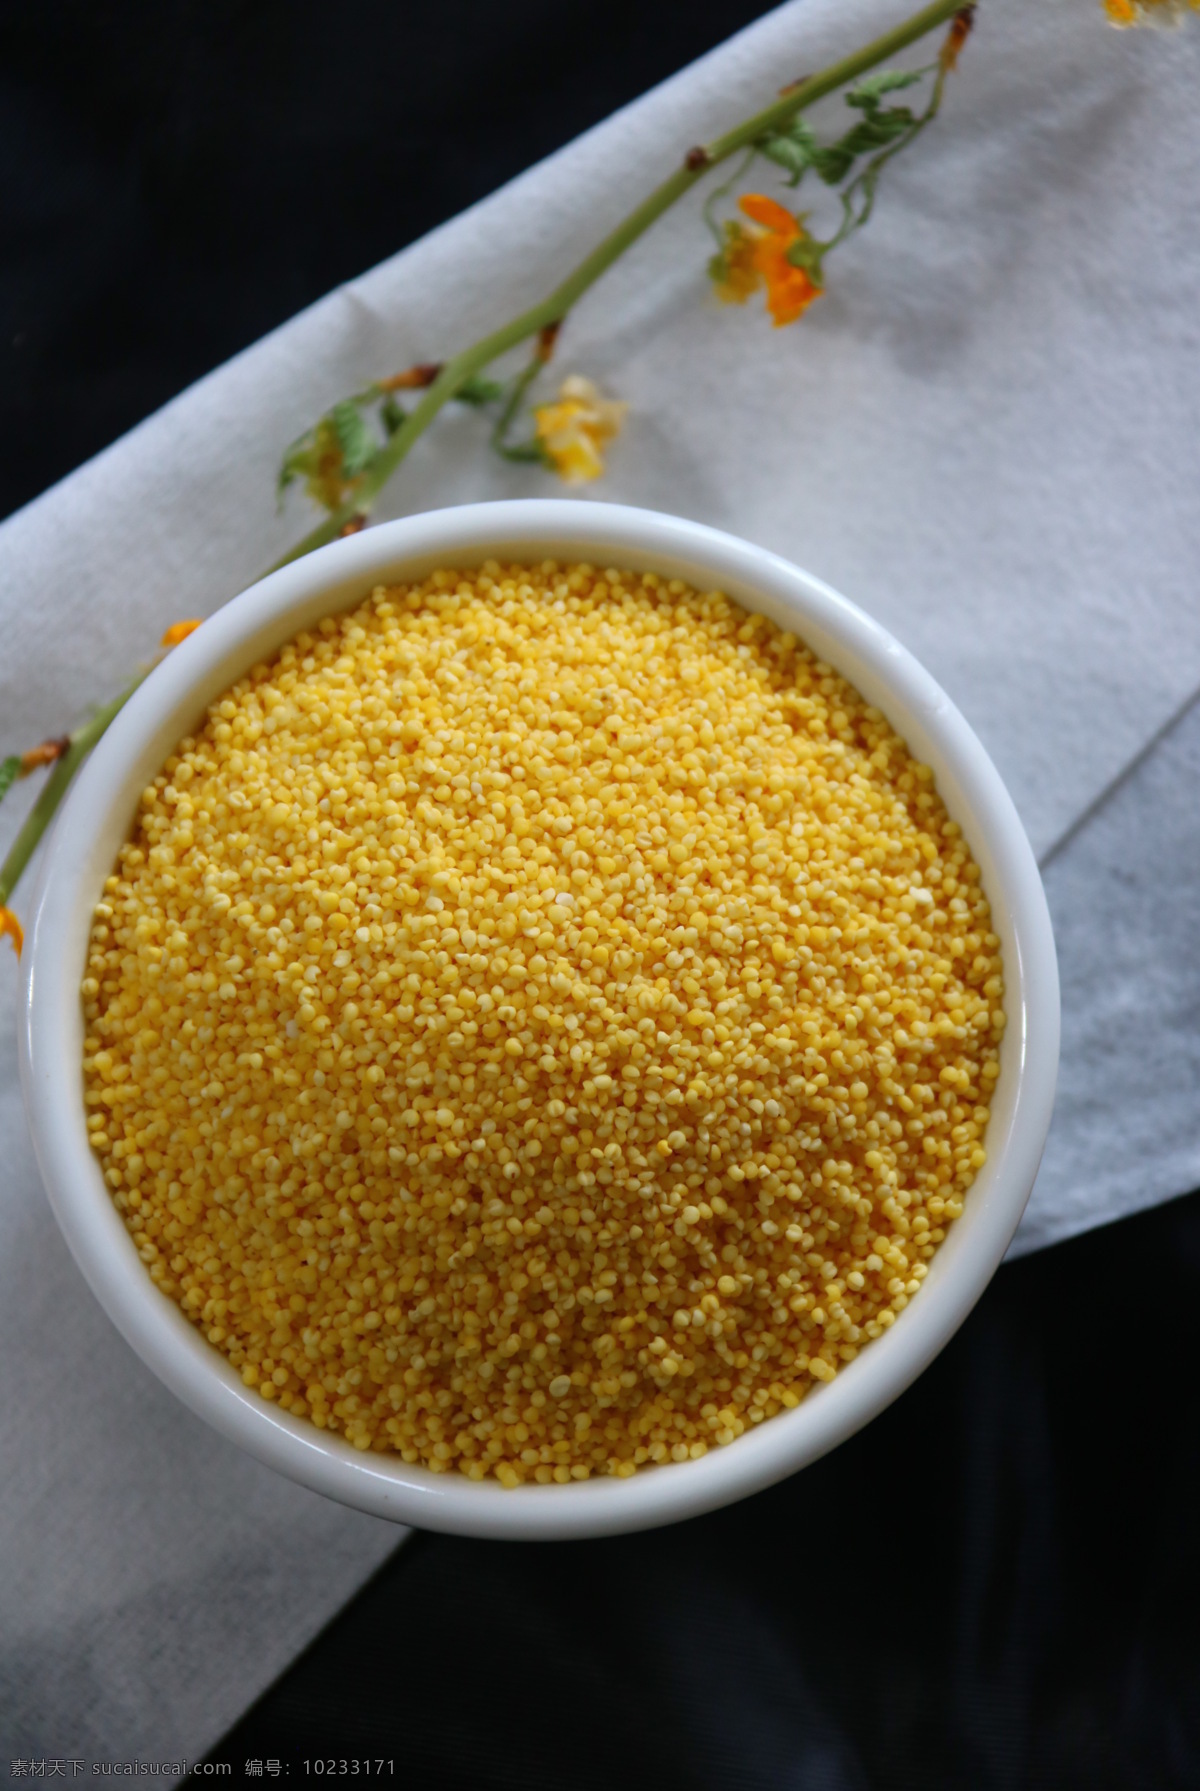 玉米渣 玉米糁 玉米 特产 唐山特产 农产品 餐饮美食 传统美食